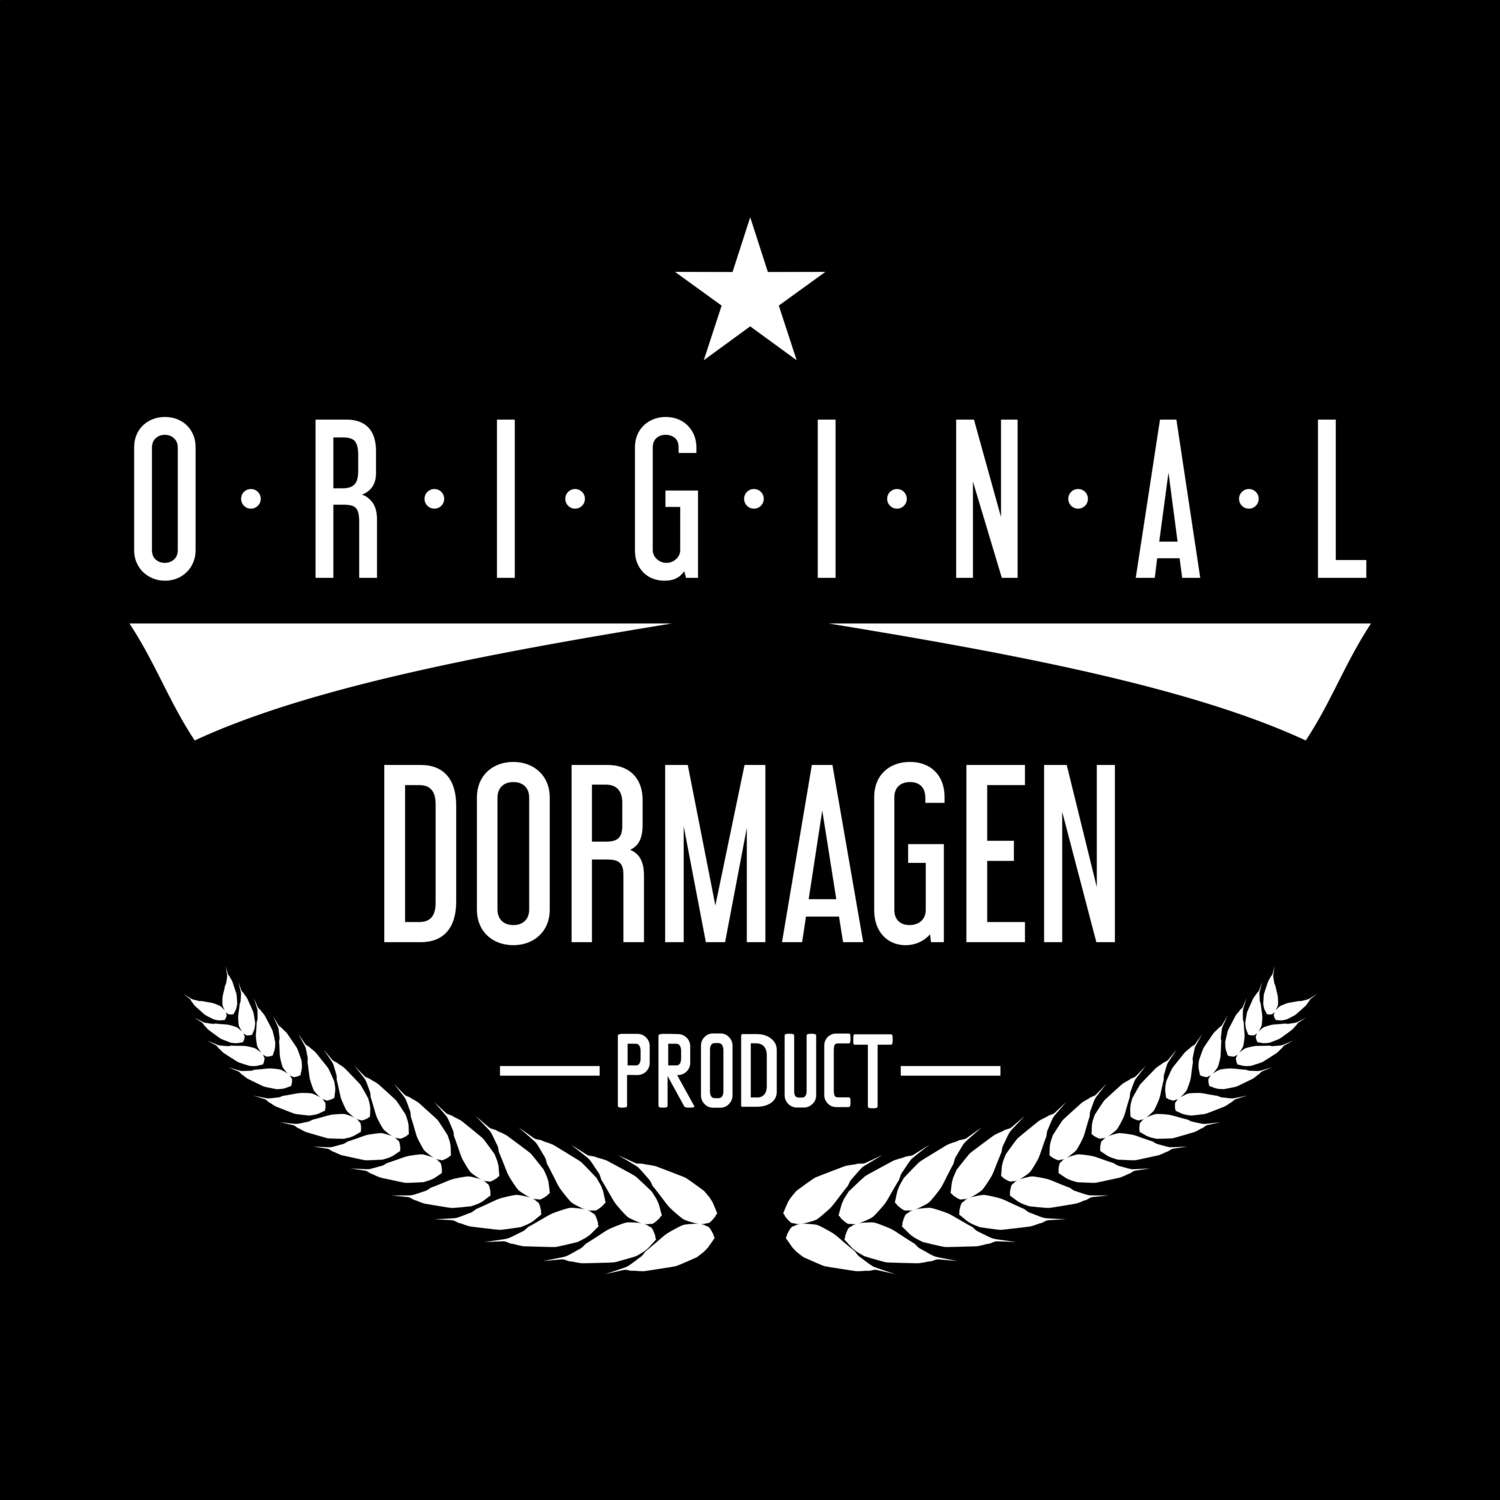 Dormagen T-Shirt »Original Product«